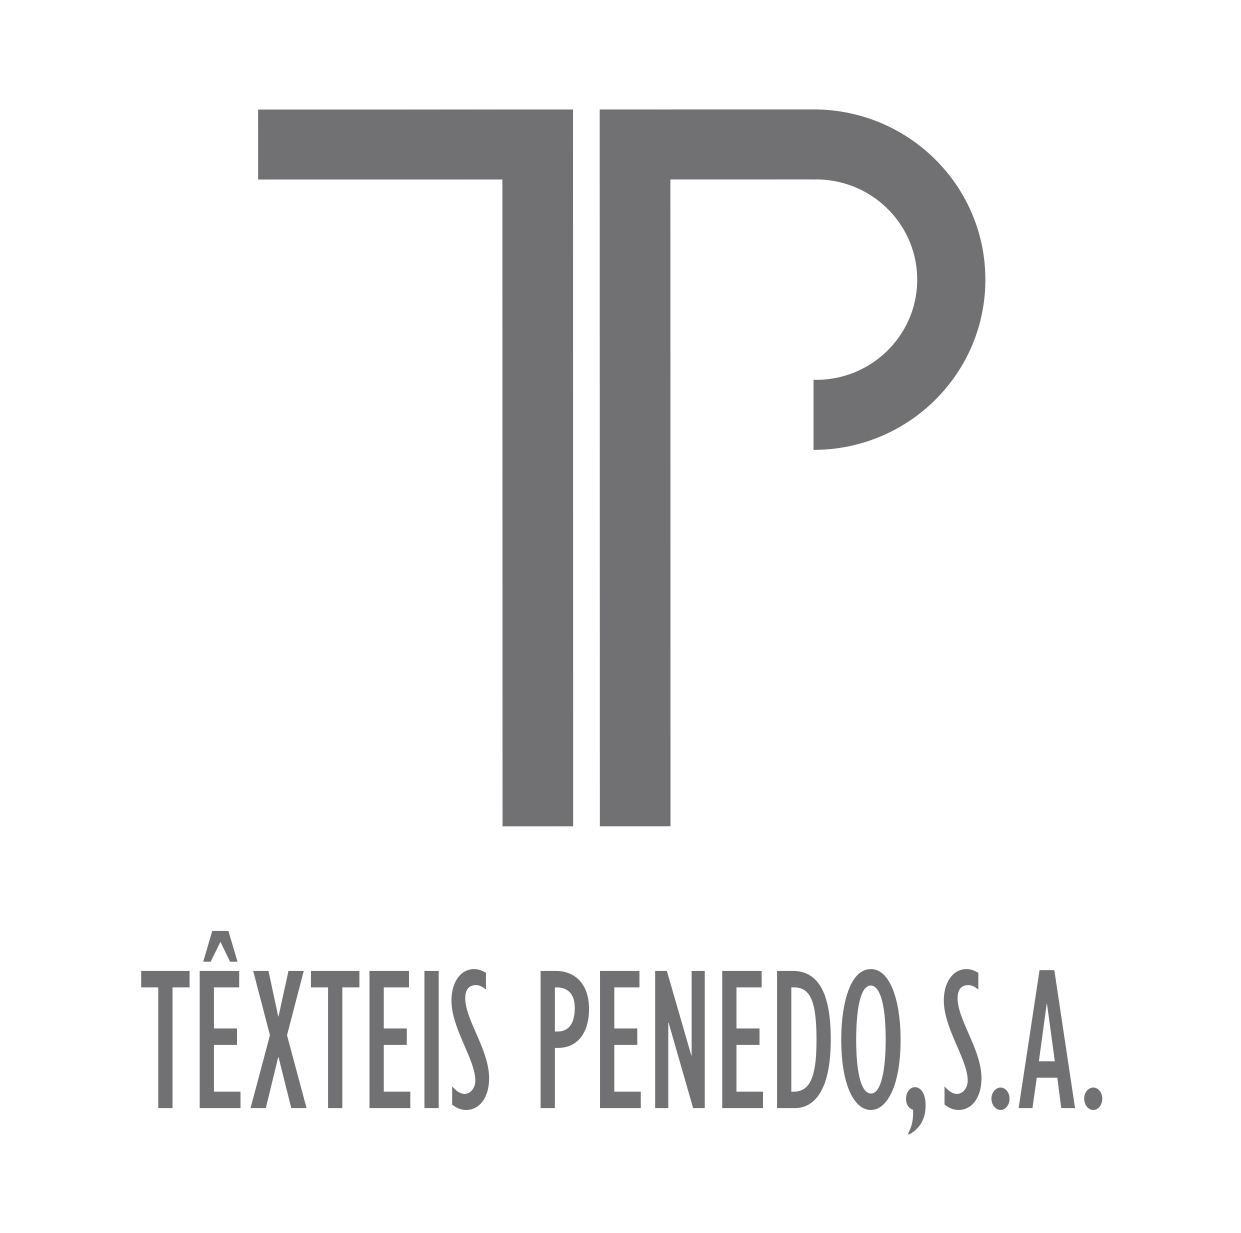 Texteis Penedo